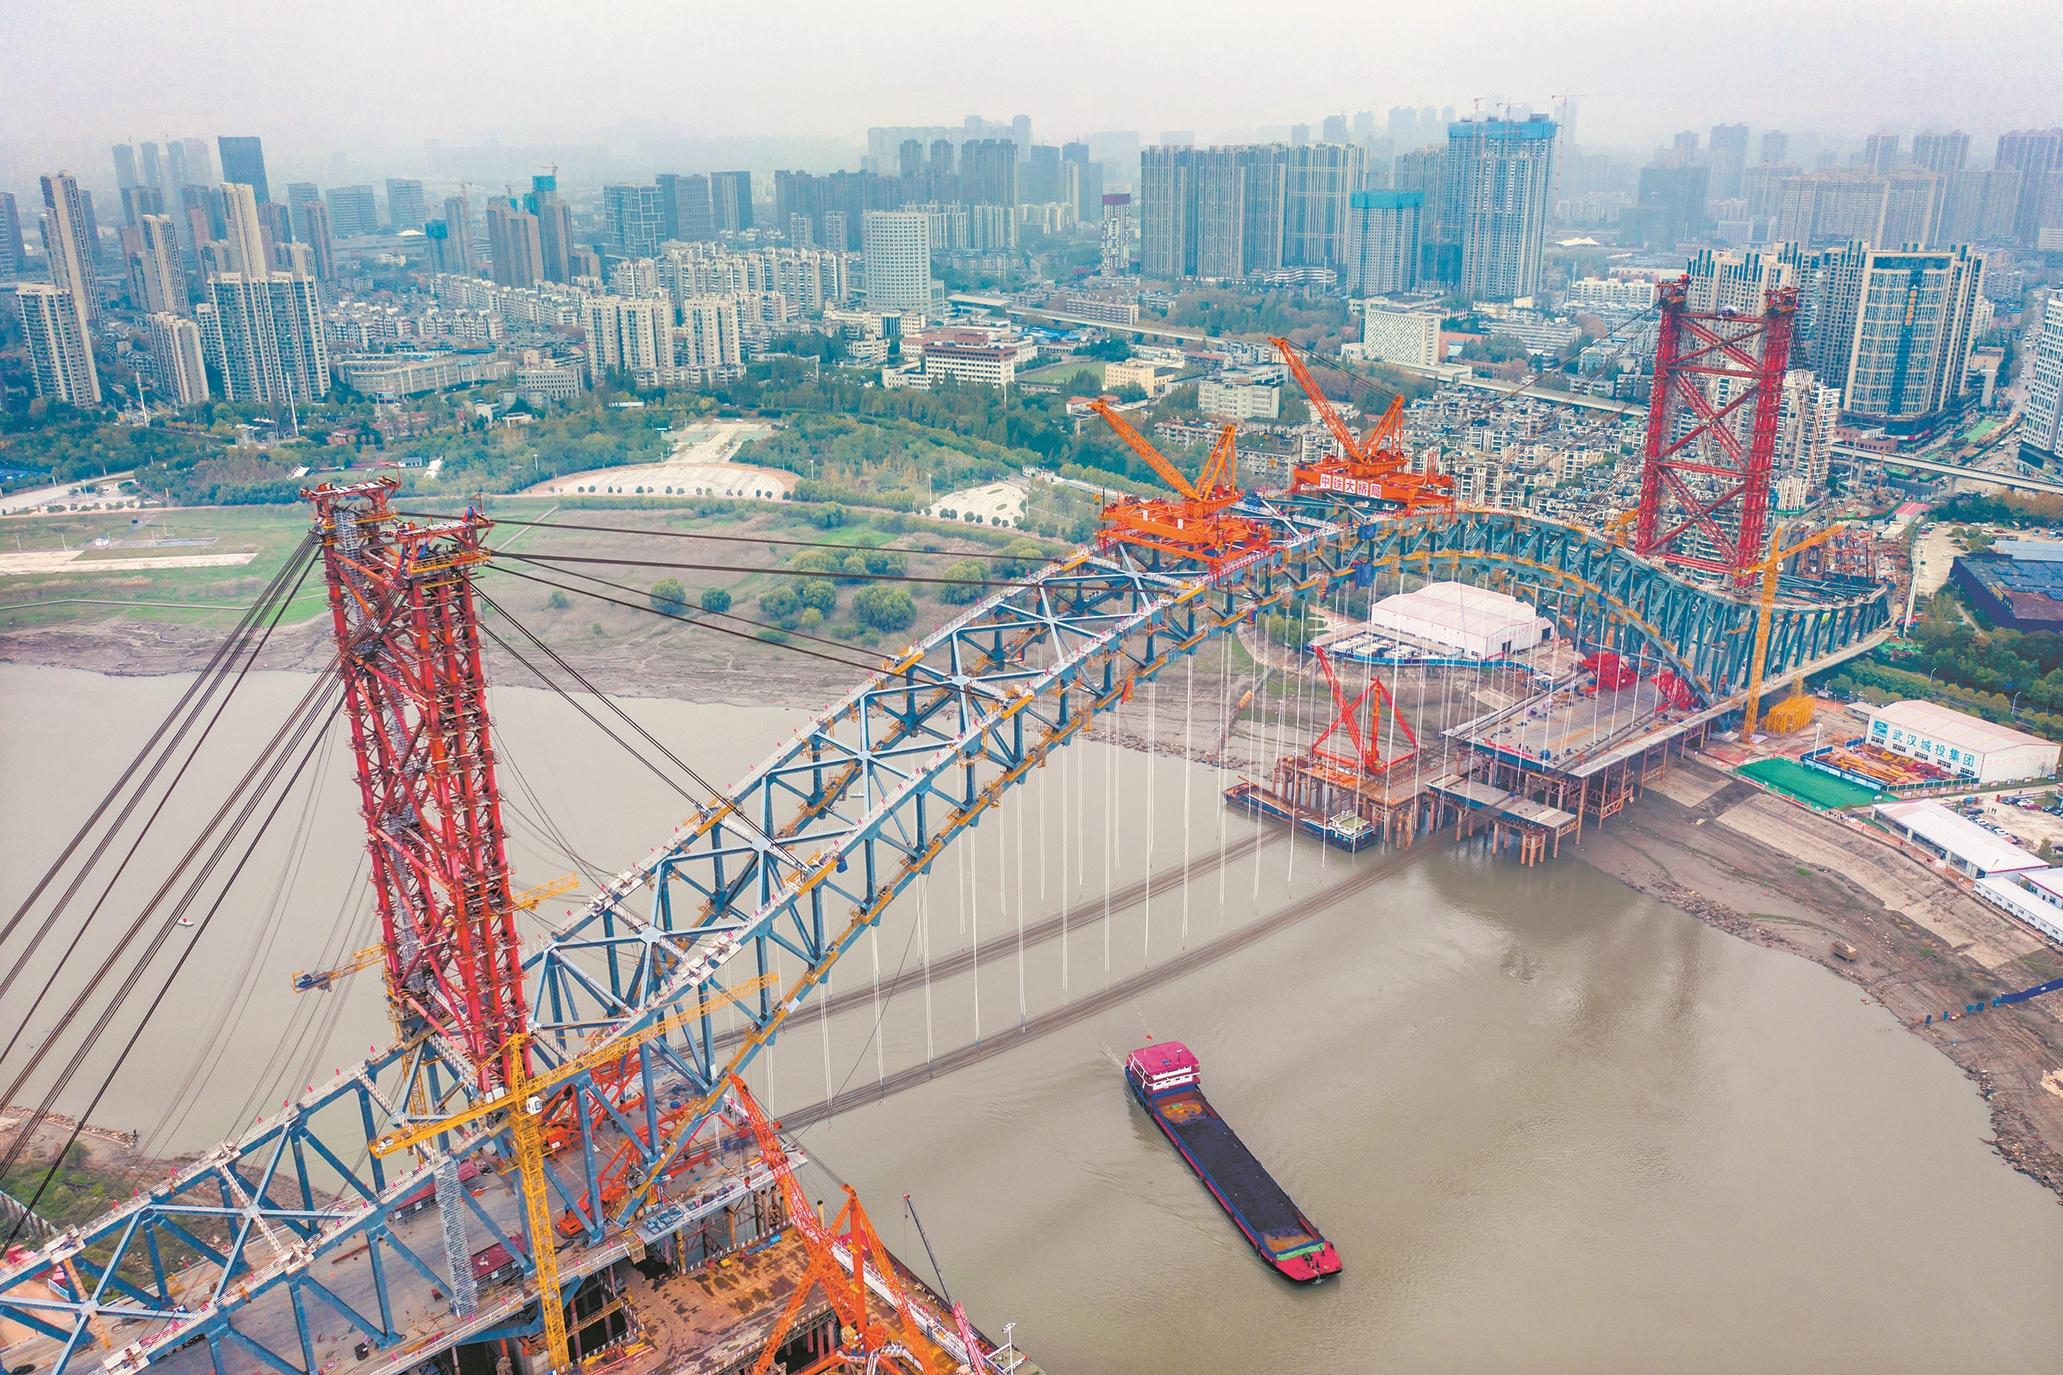 500座桥凝聚了武汉城市特色和底蕴 | 长江评论_武汉_新闻中心_长江网_cjn.cn